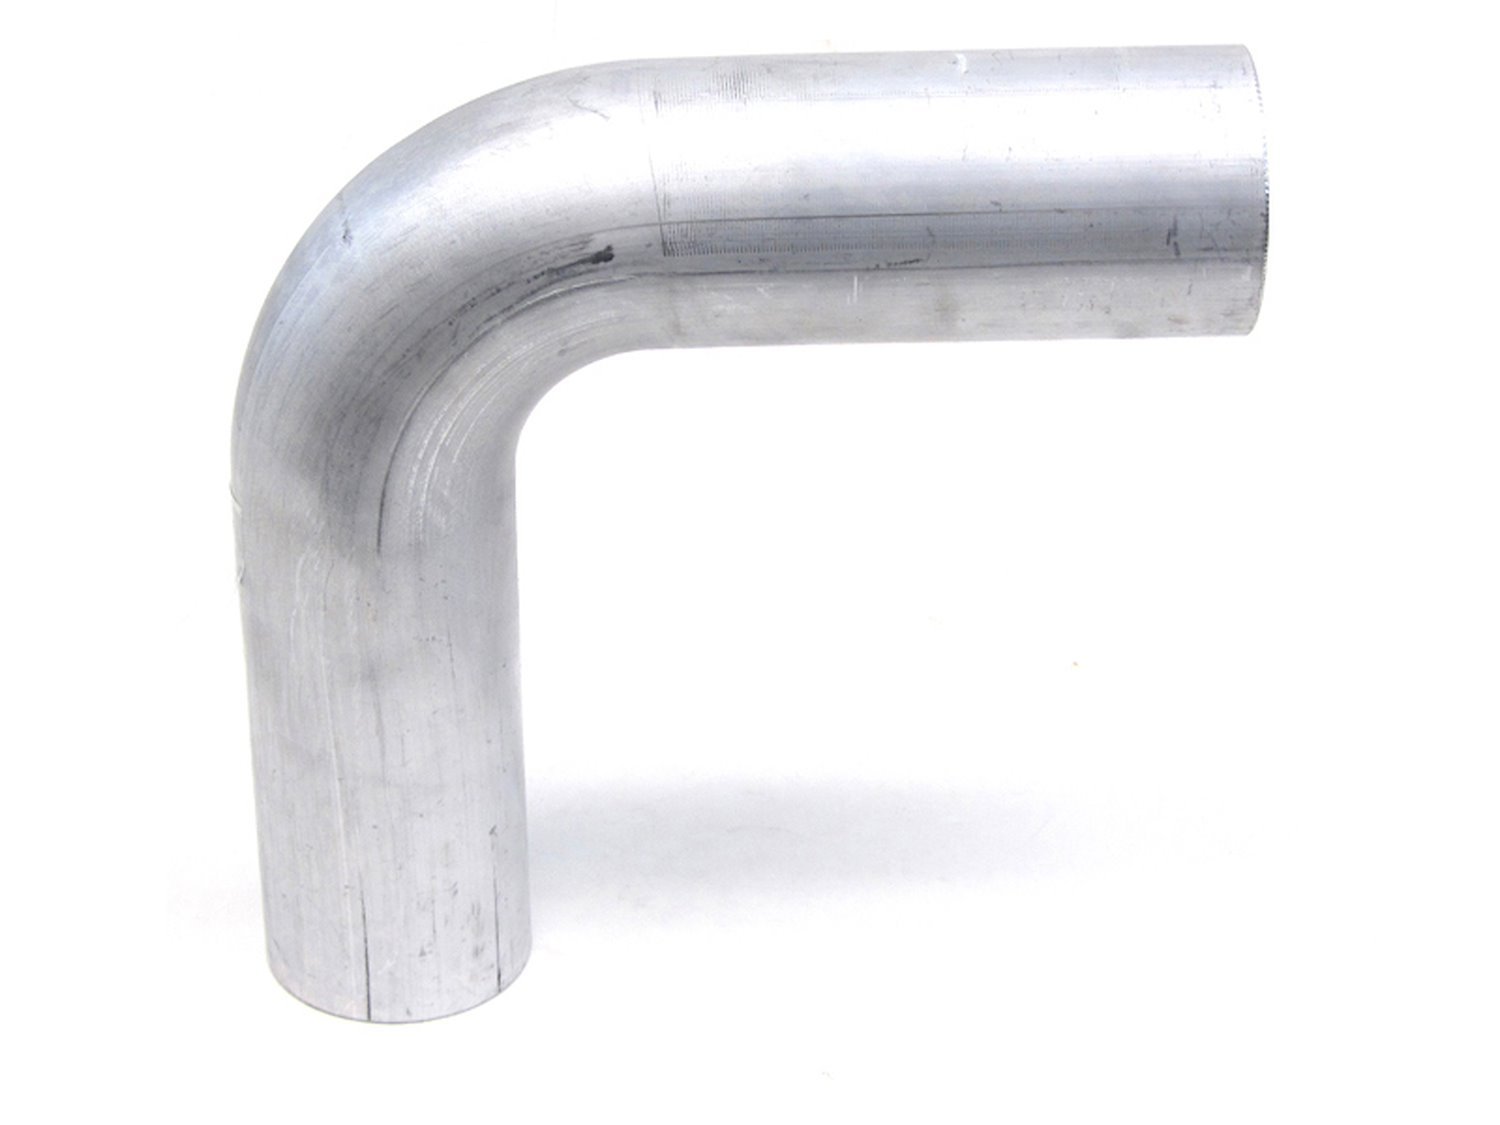 AT90-138-CLR-175 Aluminum Elbow Tube, 6061 Aluminum, 90-Degree Bend Elbow Tubing, 1-3/8 in. OD, Tight Radius, 1-3/4 in. CLR